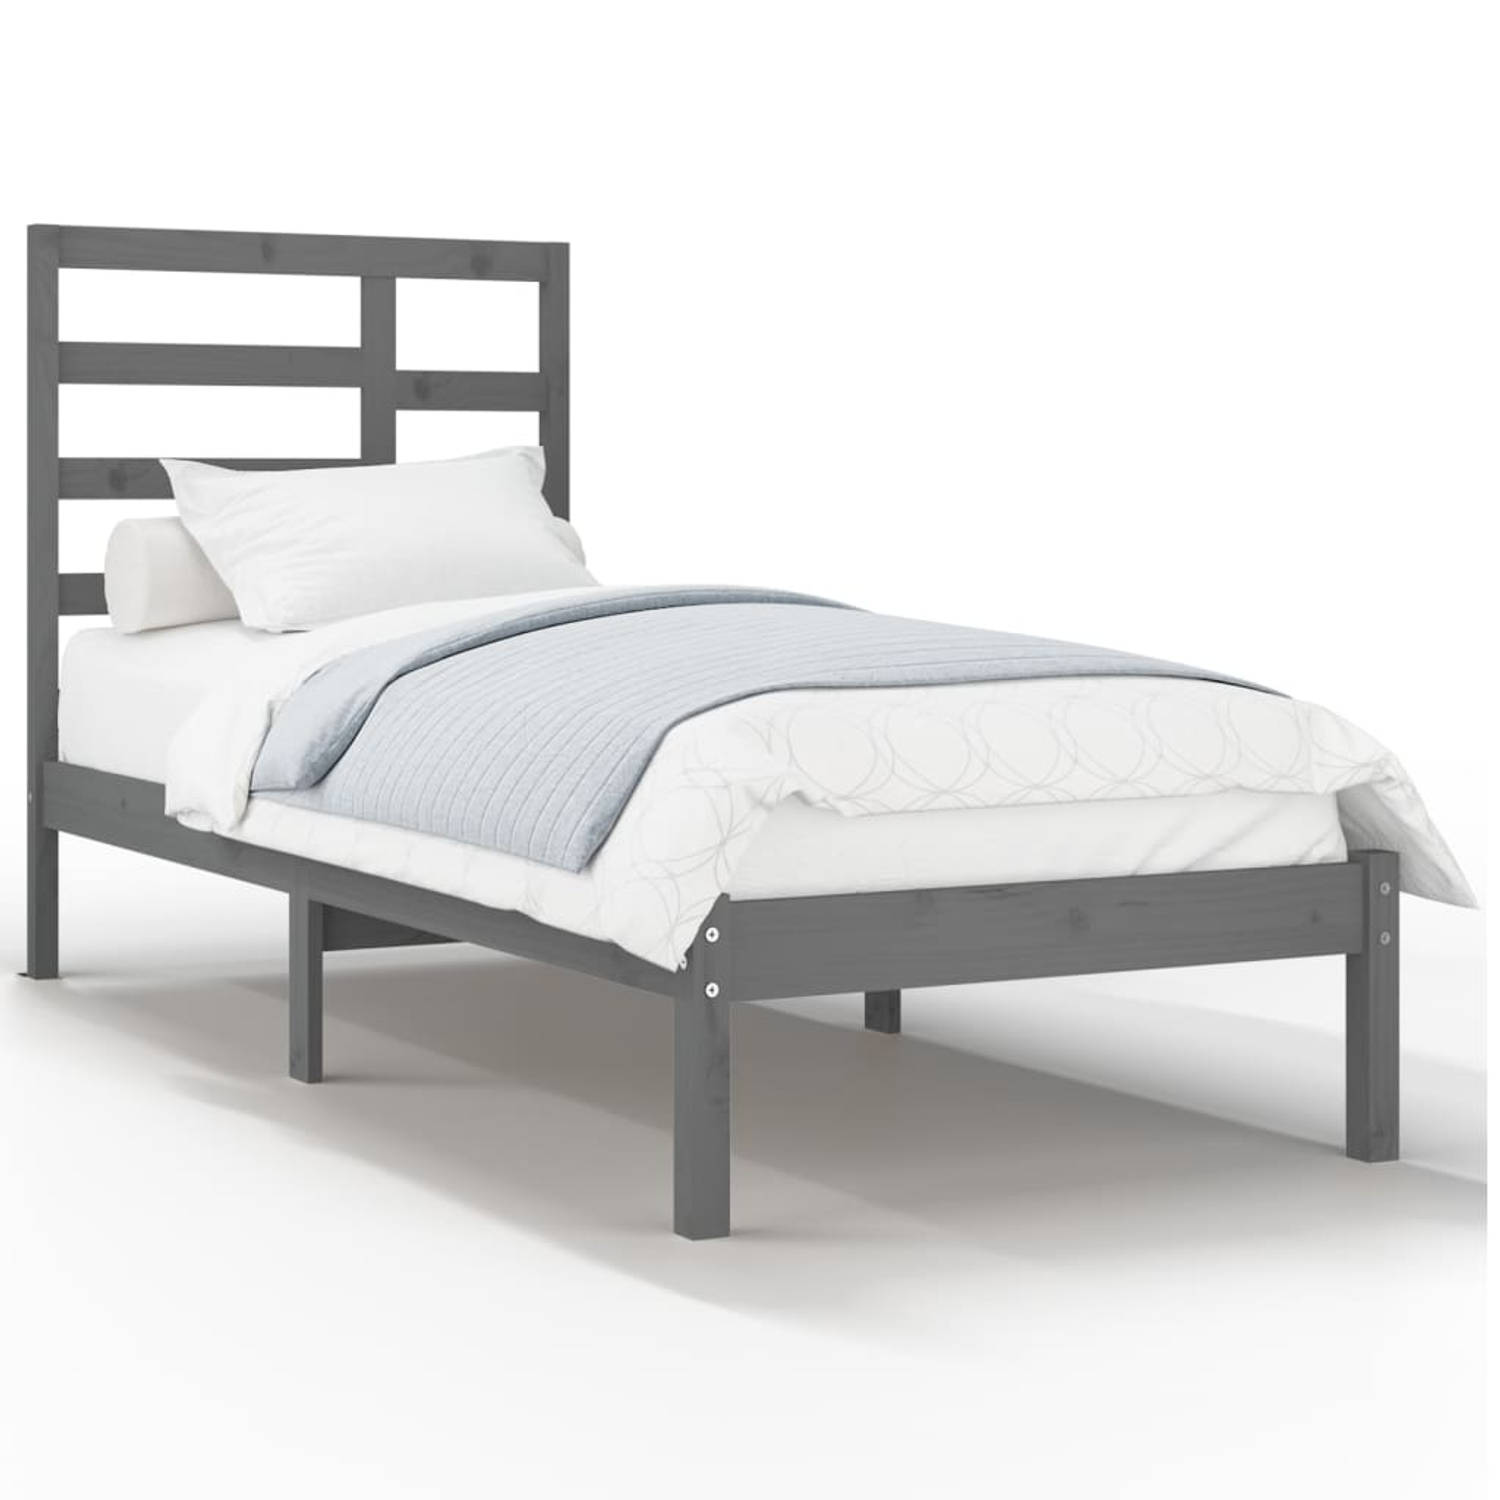 The Living Store Bedframe massief hout grijs 90x190 cm 3FT Single - Bedframe - Bedframes - Bed - Bedbodem - Ledikant - Bed Frame - Massief Houten Bedframe - Slaapmeubel - Eenpersoo